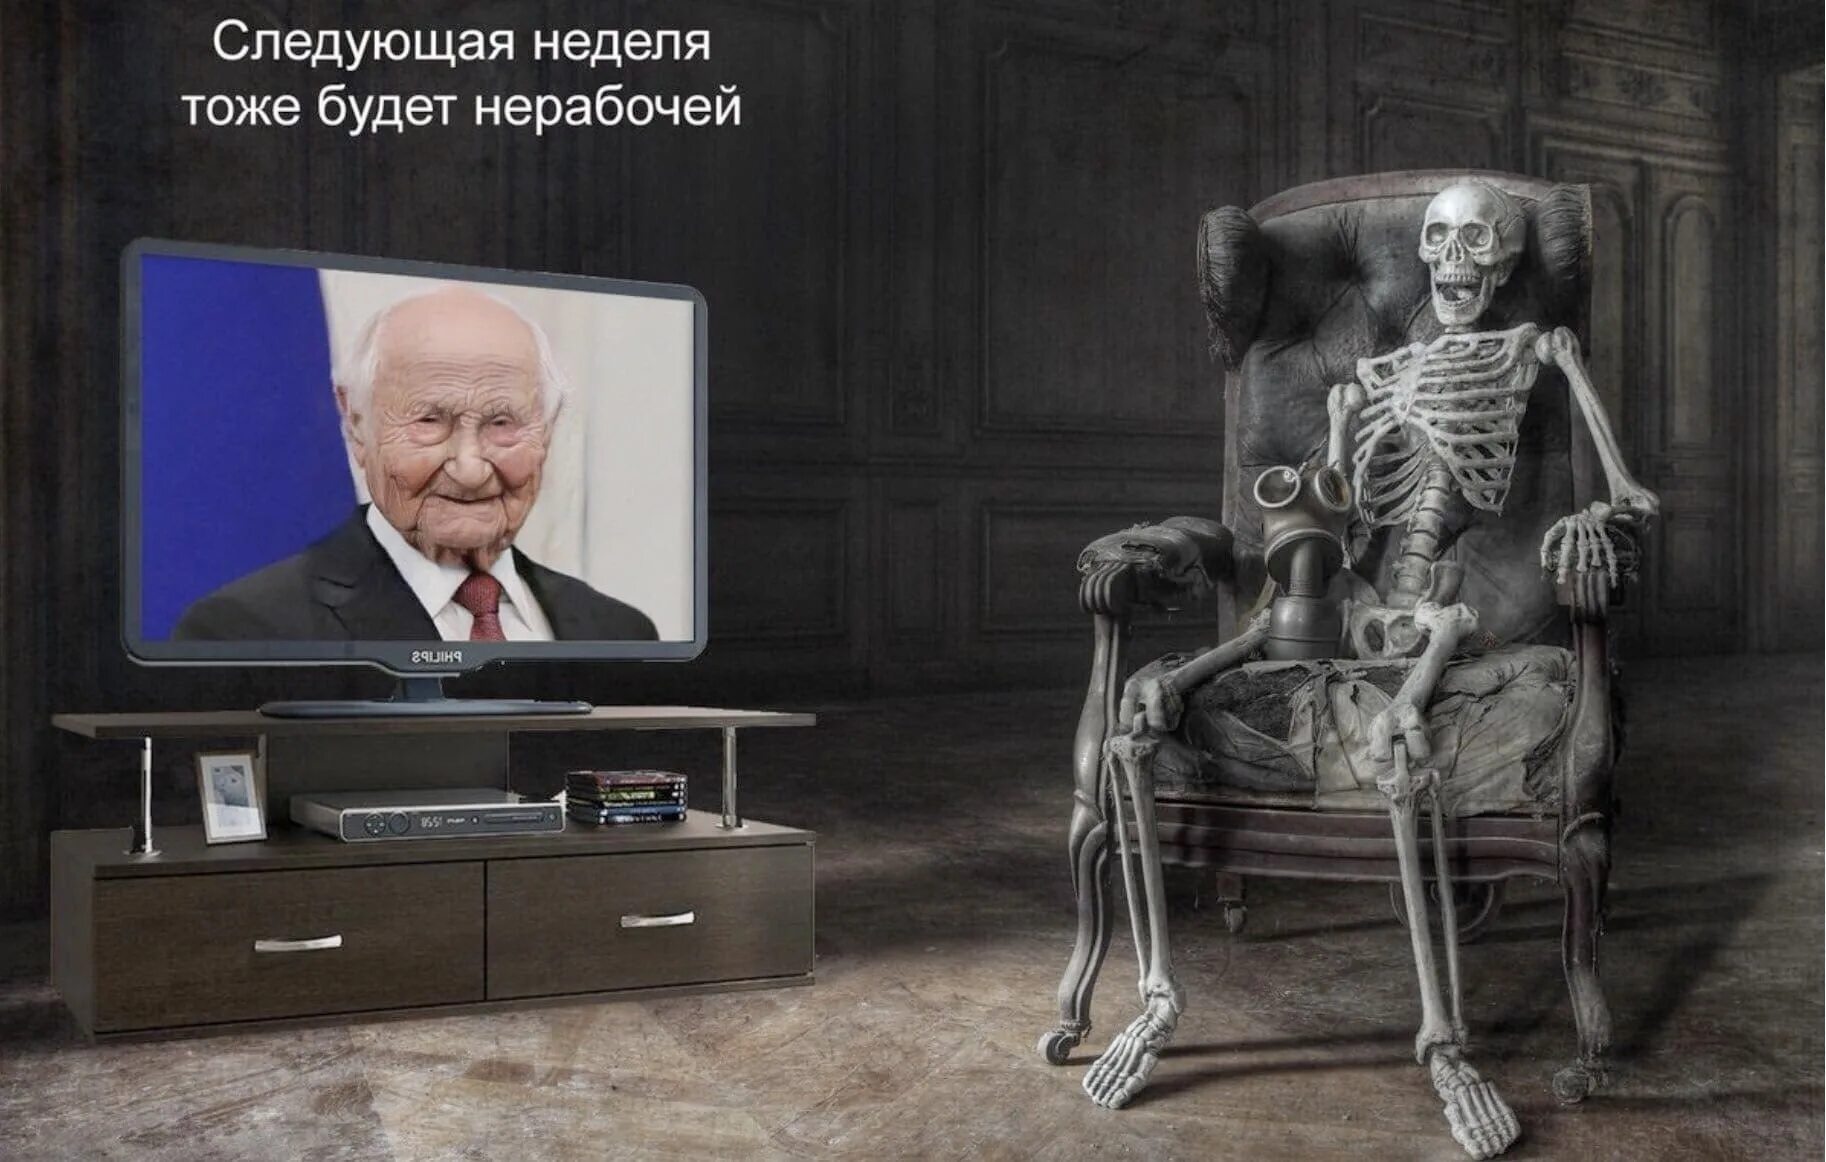 Тоже есть телевизор. Скелет у телевизора с Путиным.